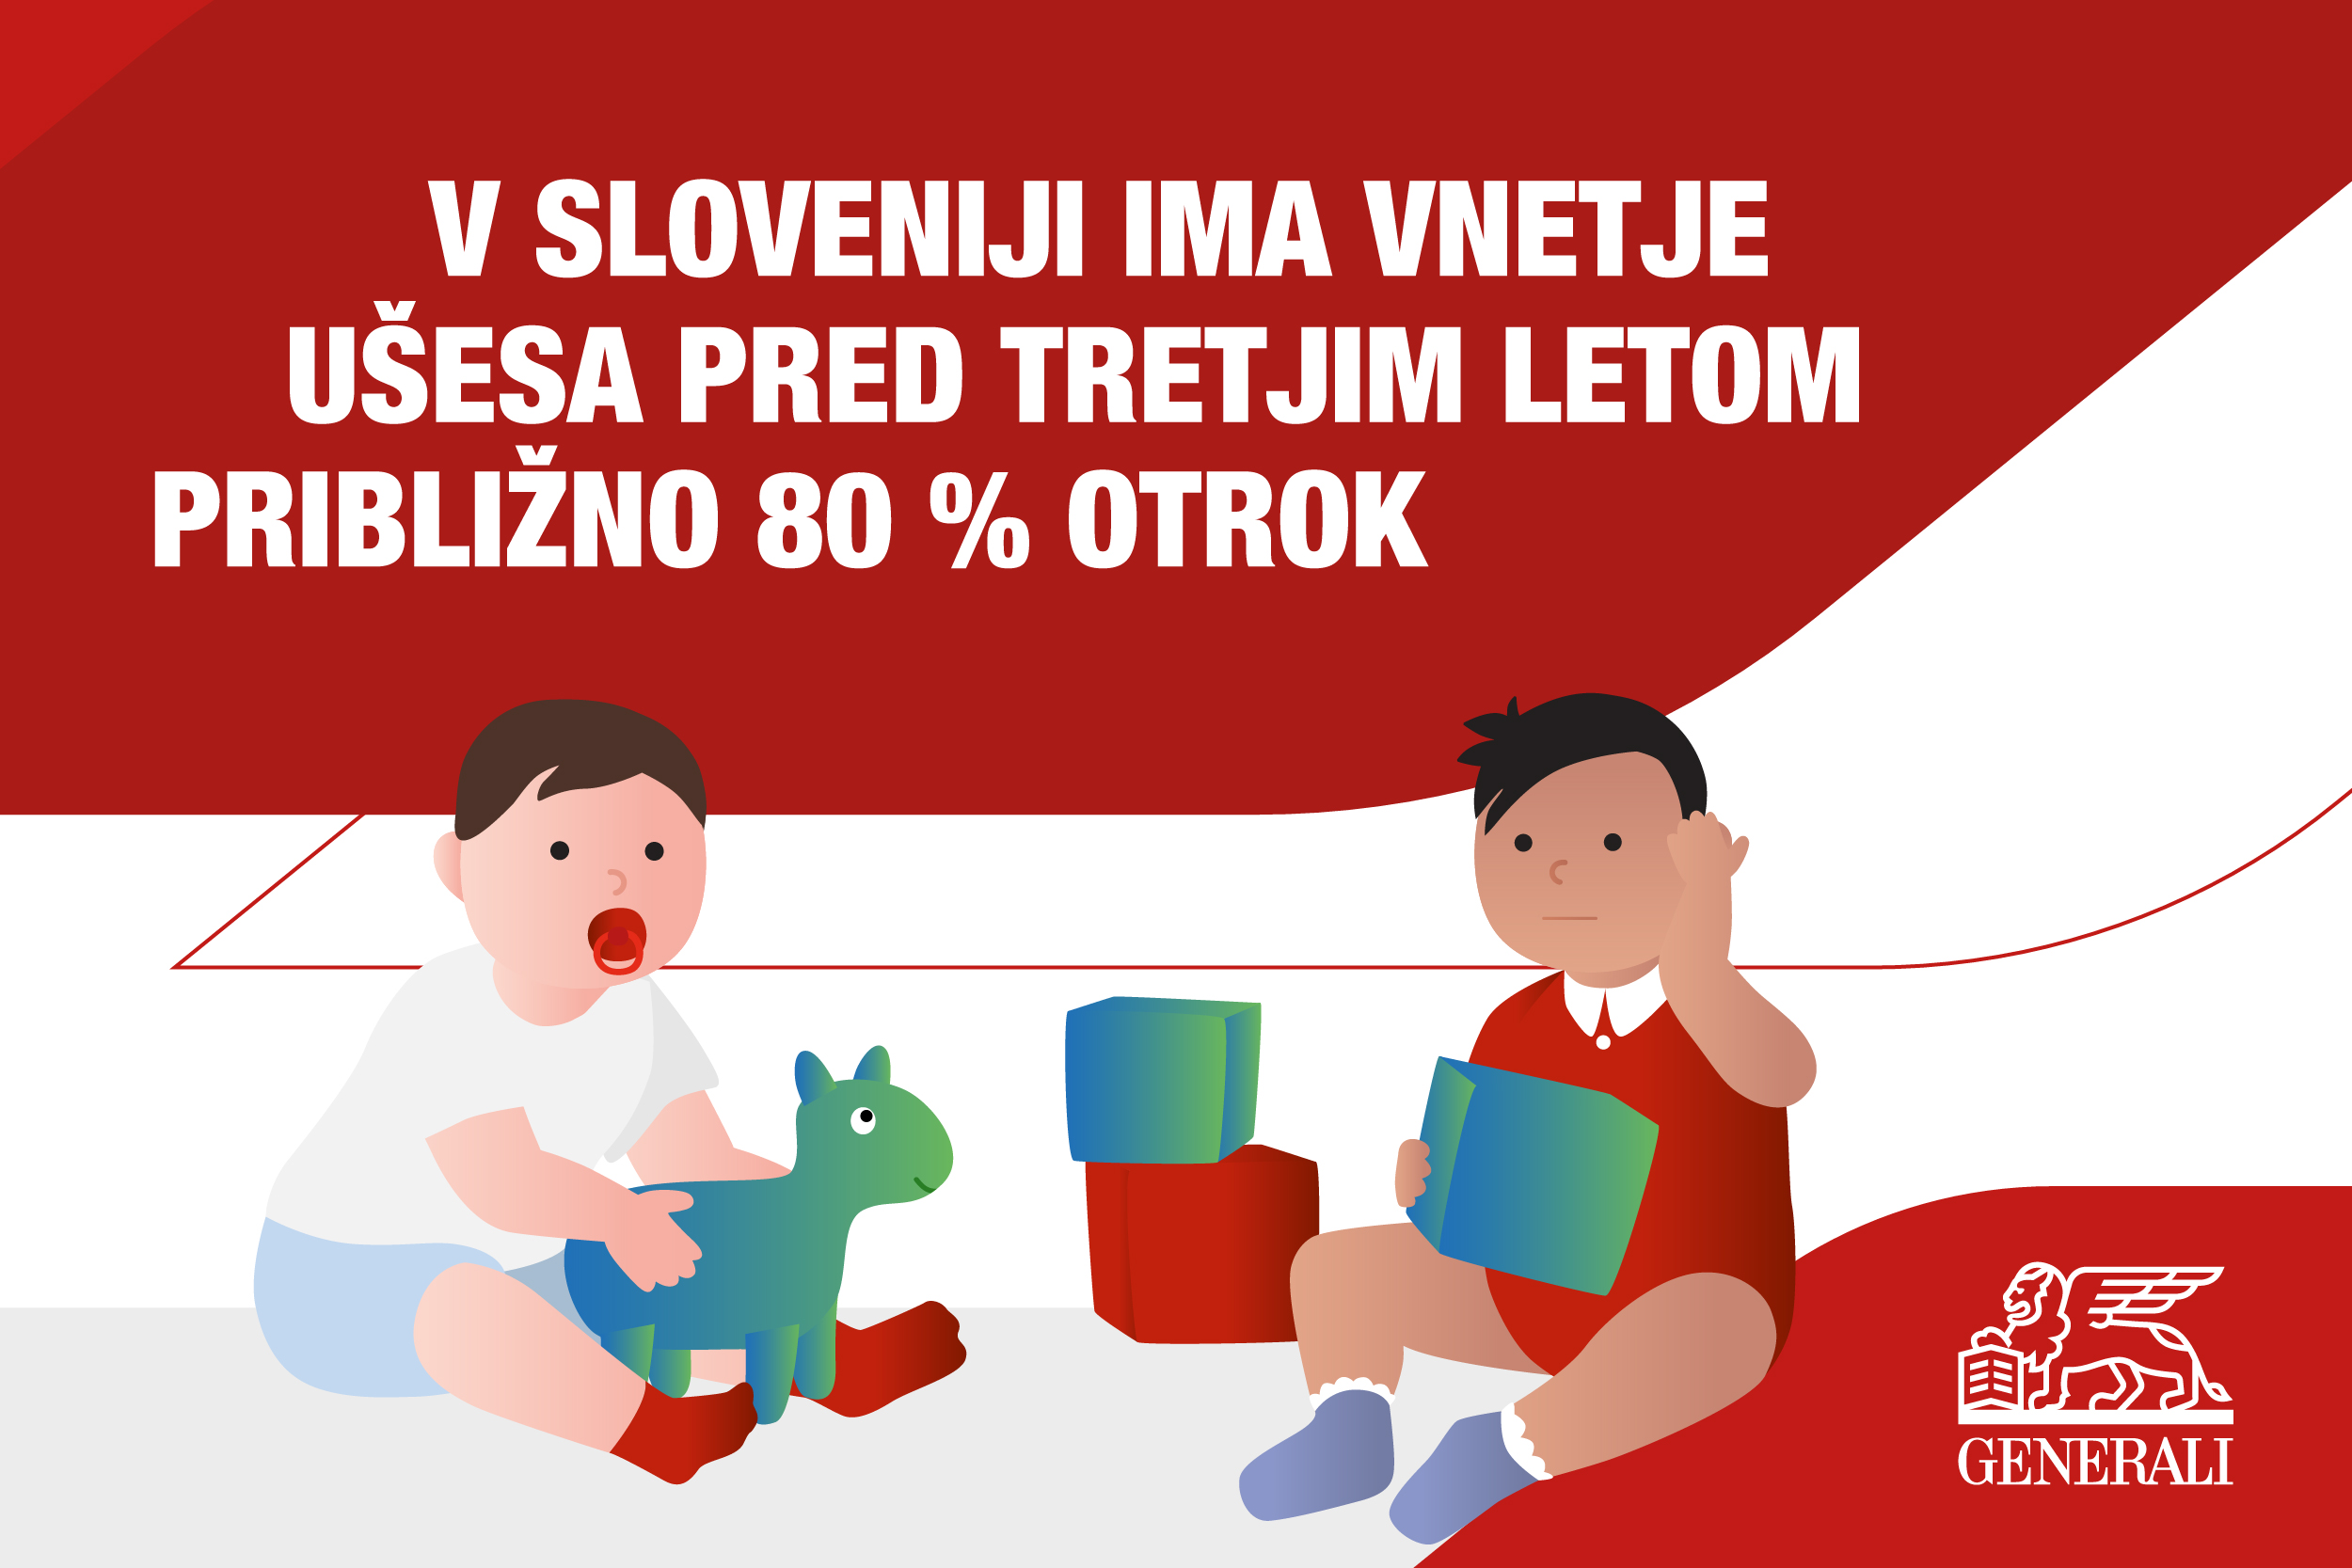 V Sloveniji ima vnetje ušesa pred tretjim letom približno 80 % otrok.